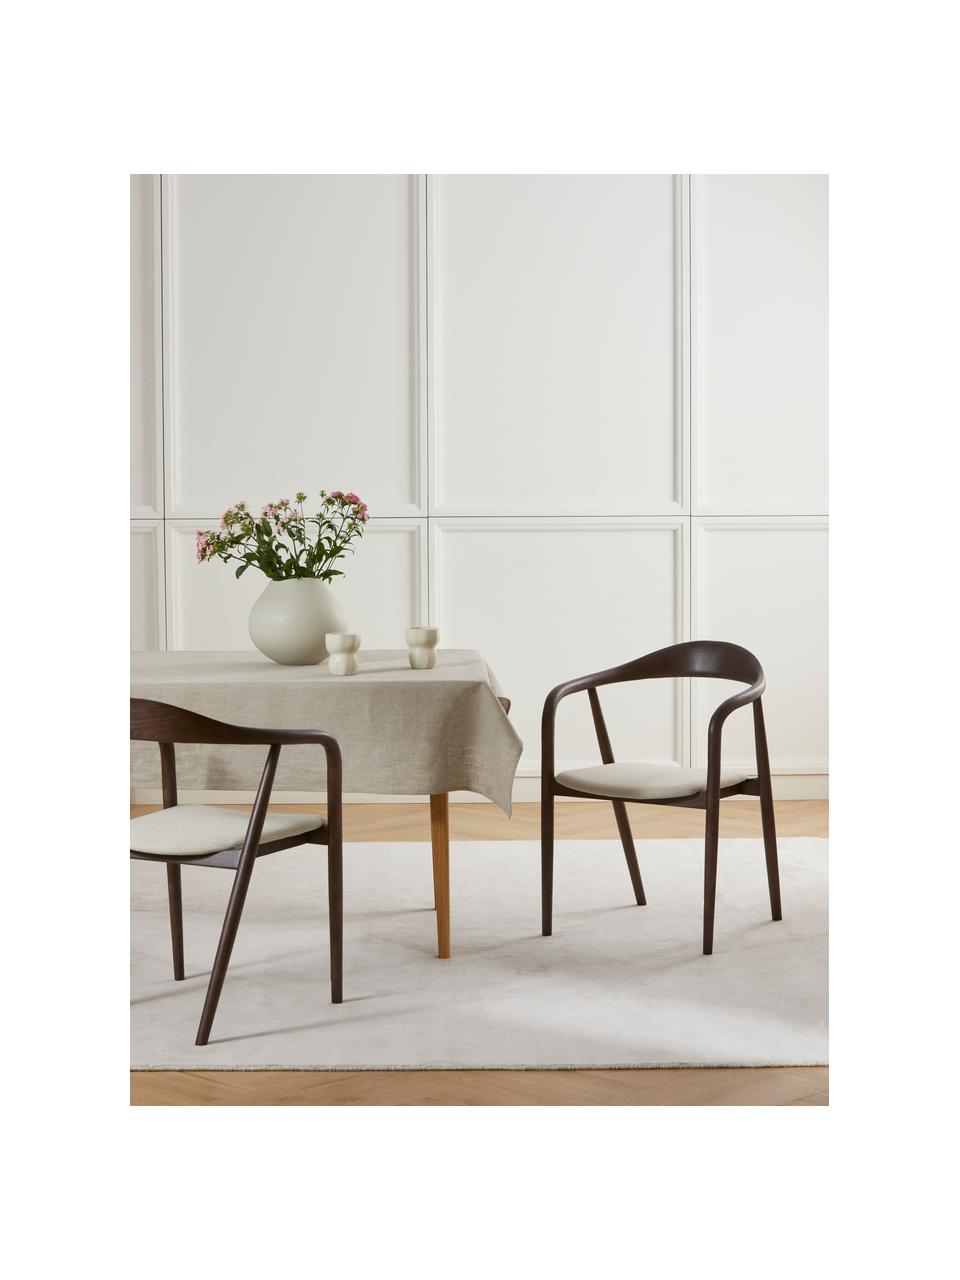 Drevená stolička s opierkami s vankúšom na sedenie Angelina, Krémovobiela, tmavé jaseňové drevo, Š 57 x V 80 cm